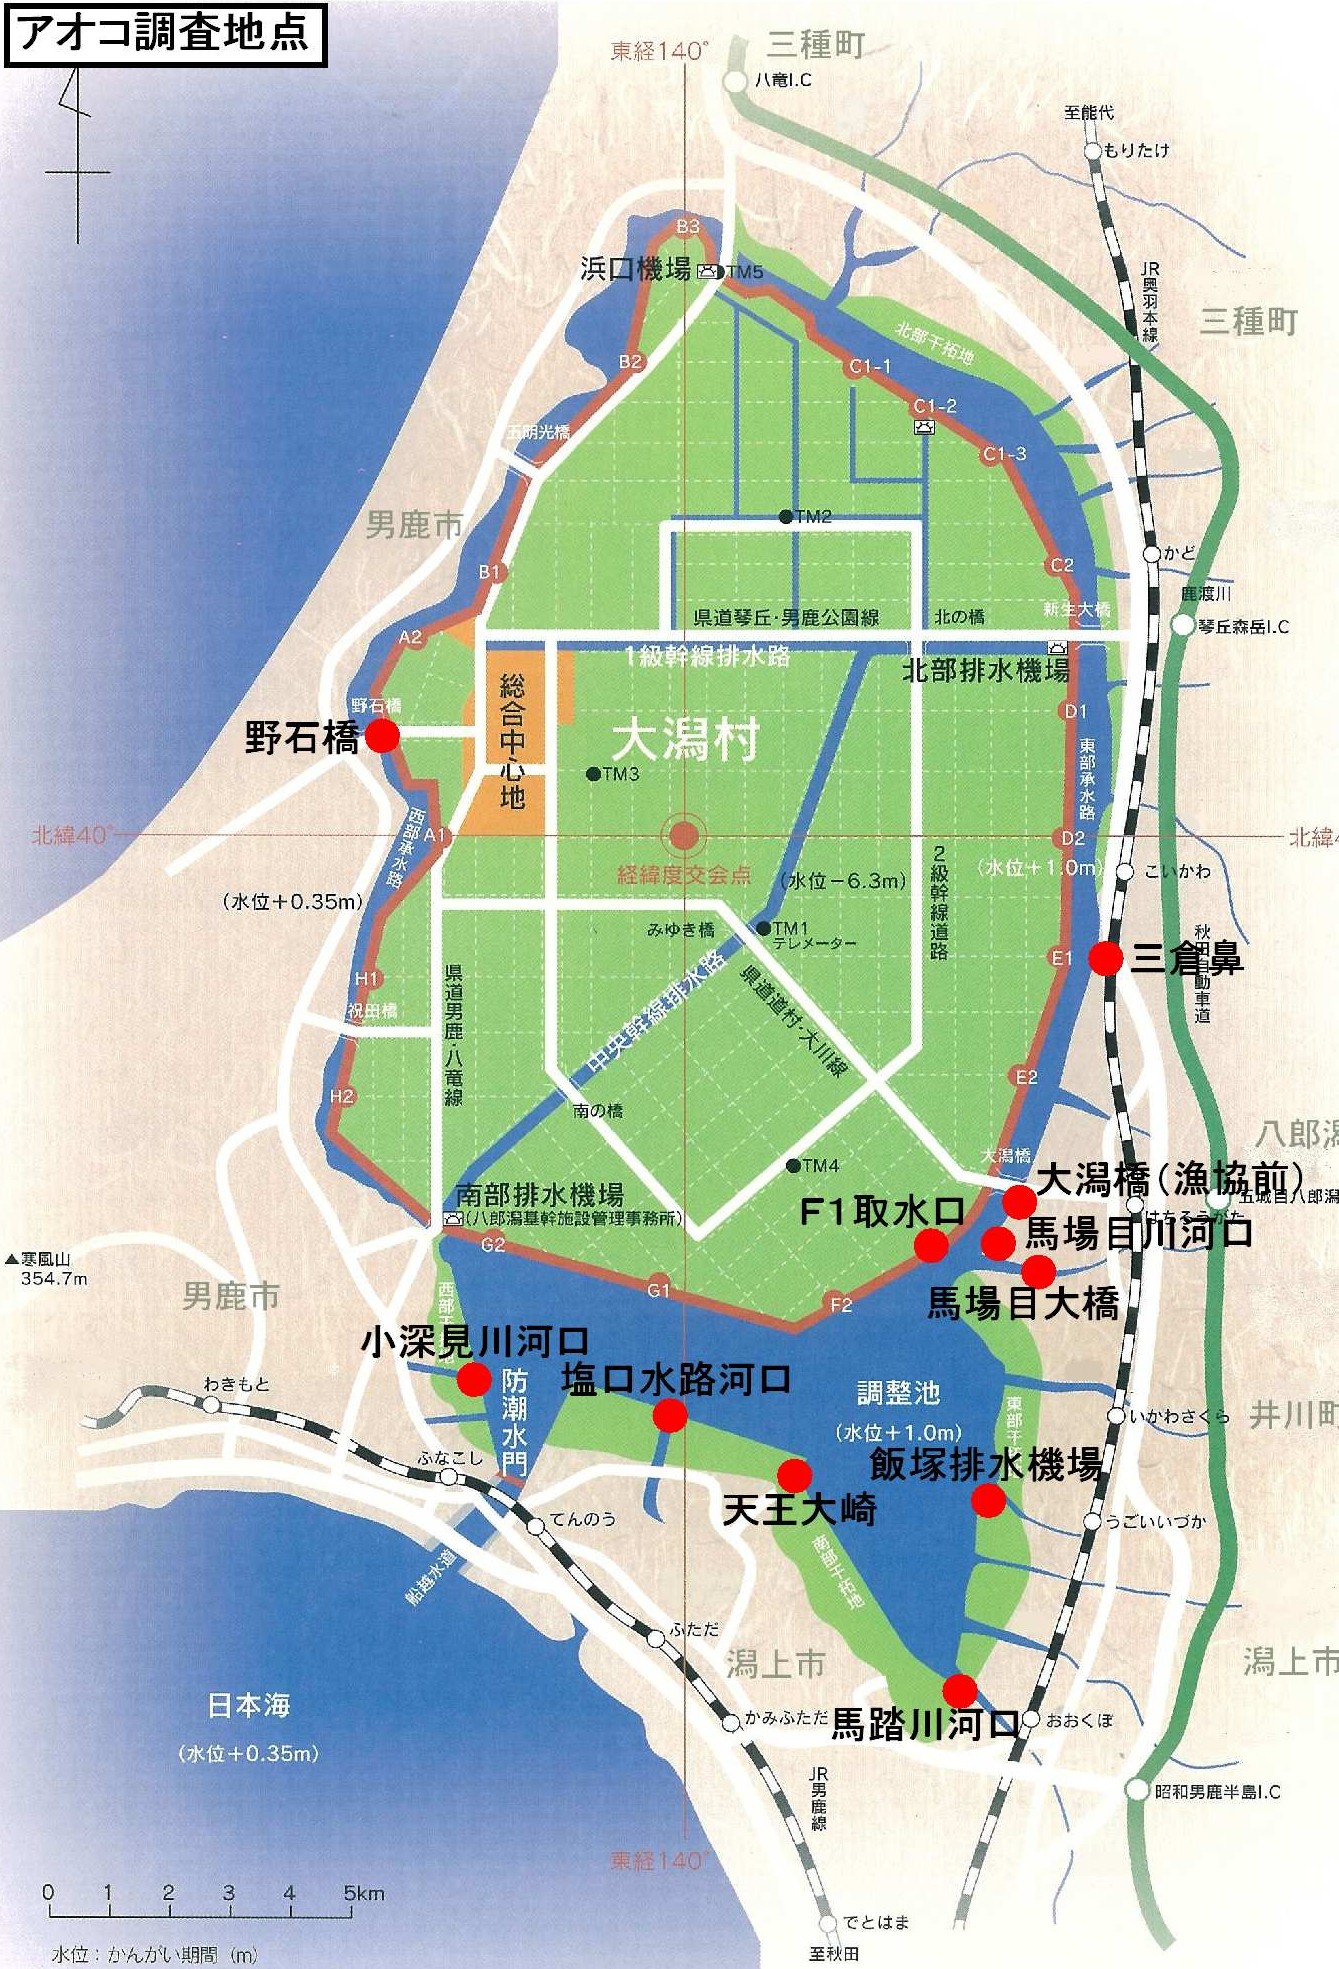 図:アオコ調査地点